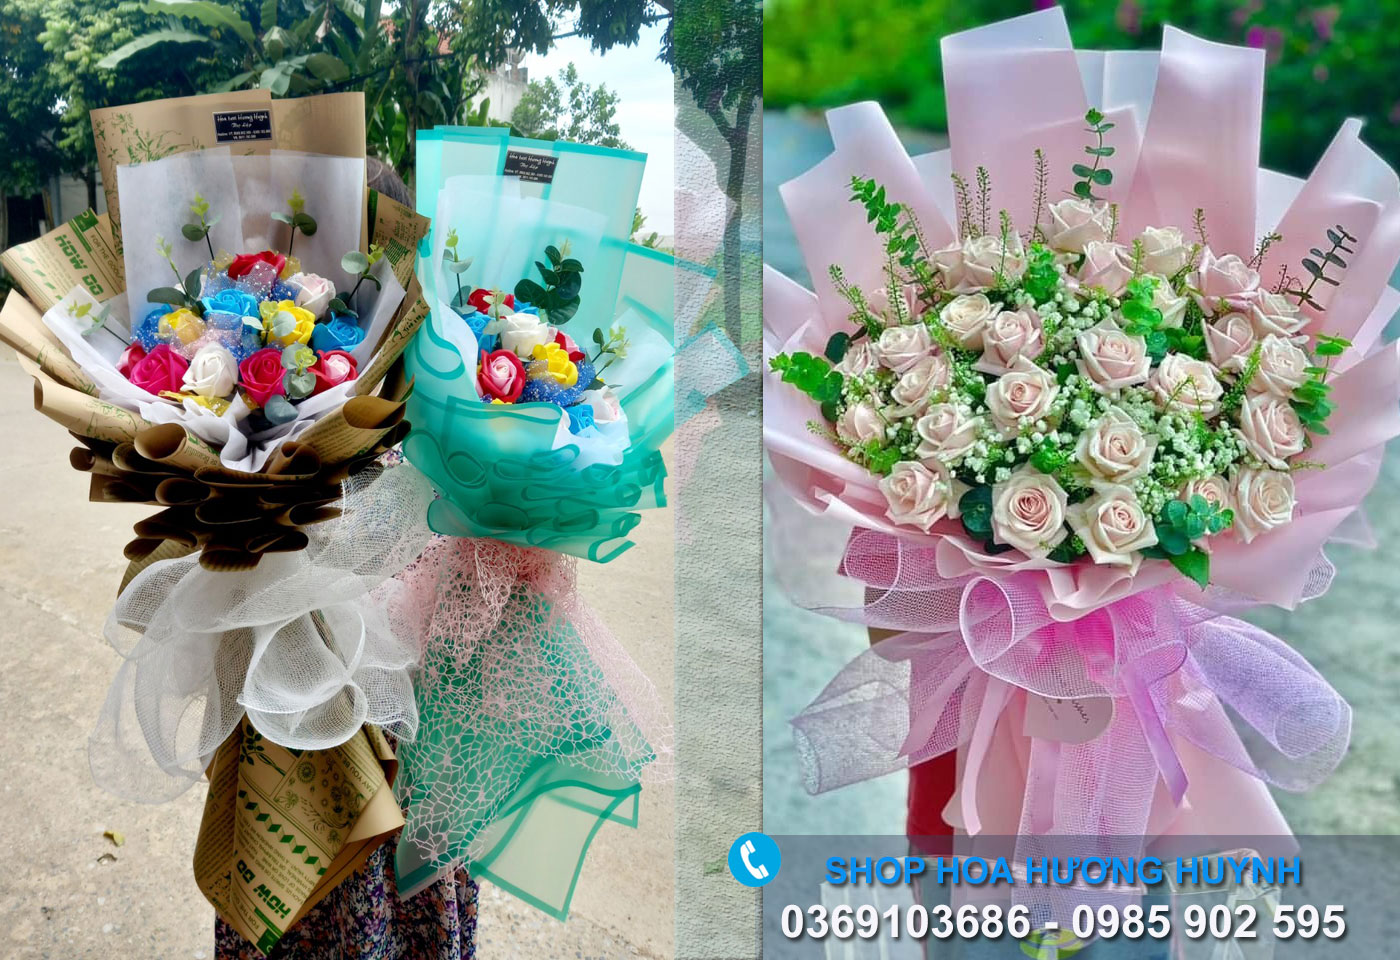 Bó hoa nào phù hợp để tặng vào dịp Ngày Phụ nữ Việt Nam?